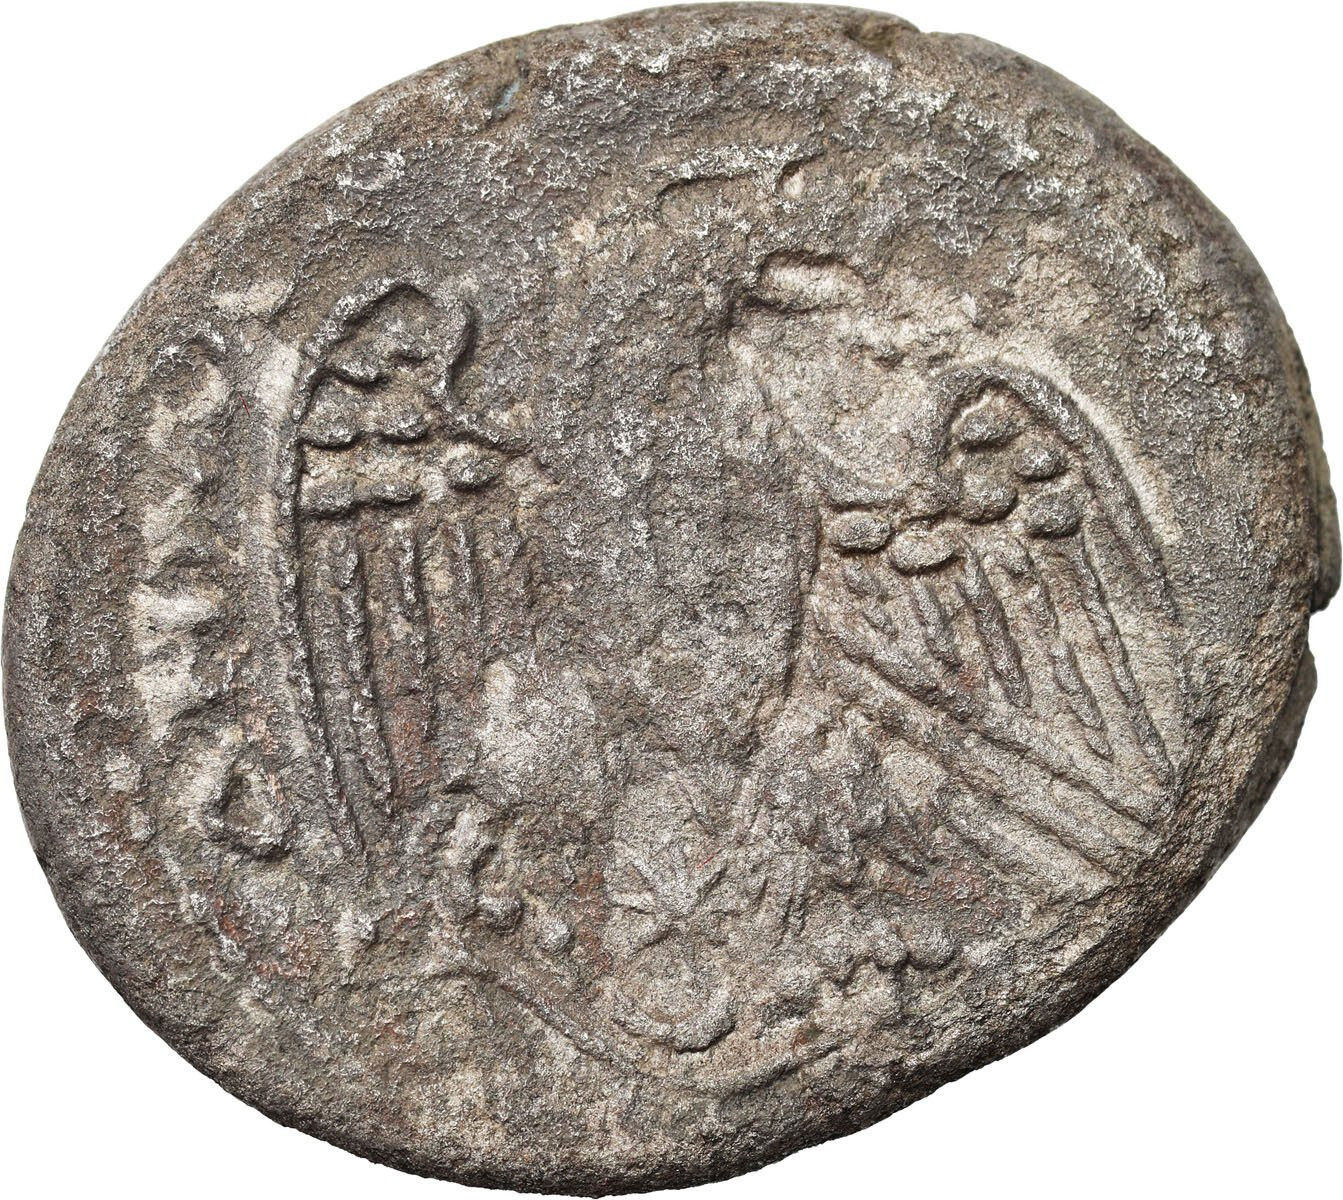 Rzym prowincjonalny, Syria - Antiochia - Karakalla (198–217). Tetradrachma bilonowa